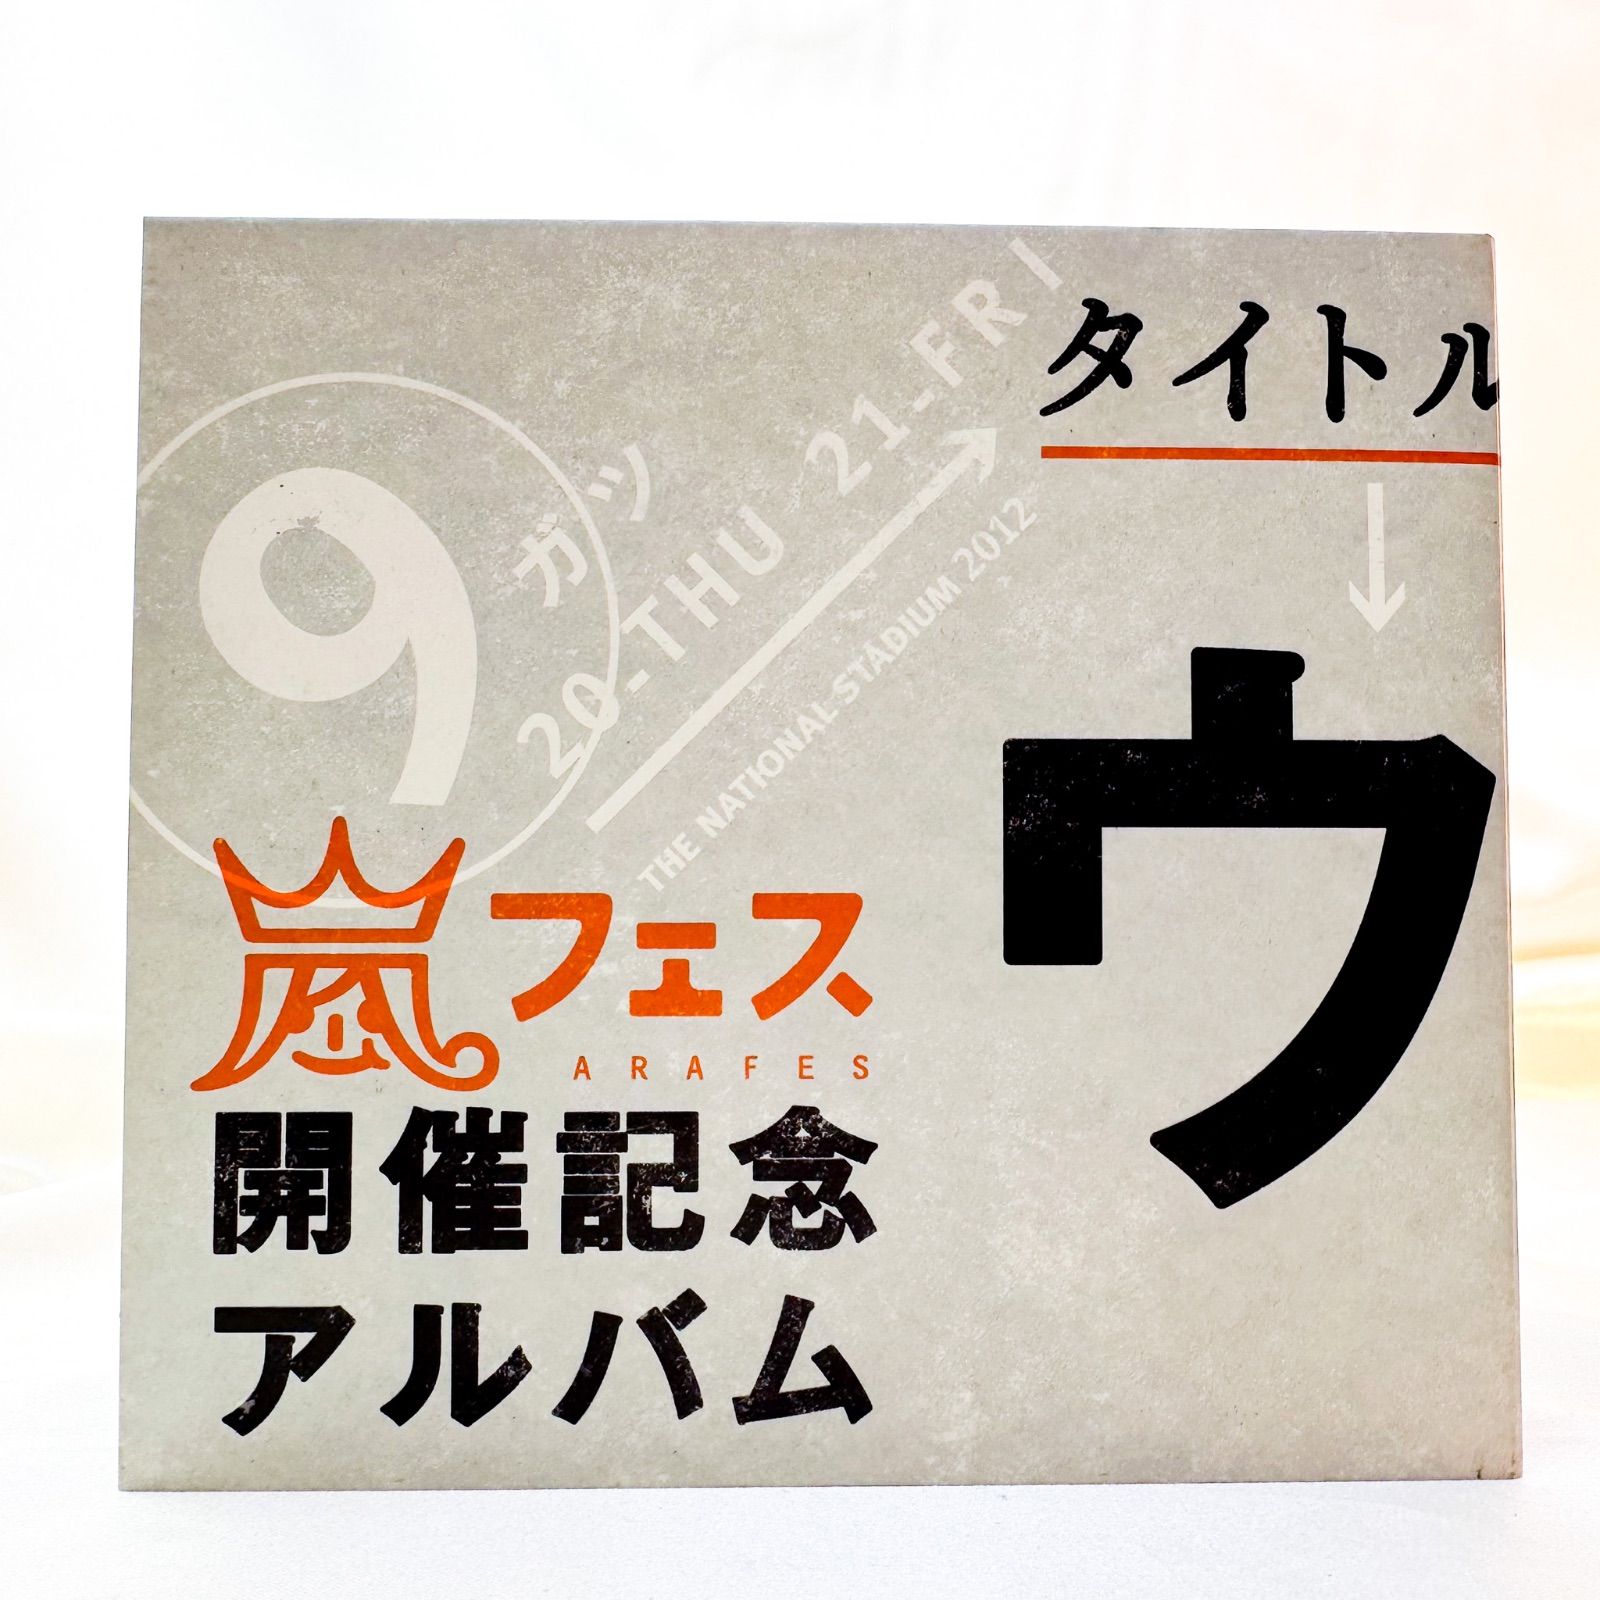 嵐『ウラ嵐マニア』CD アルバム - メルカリ